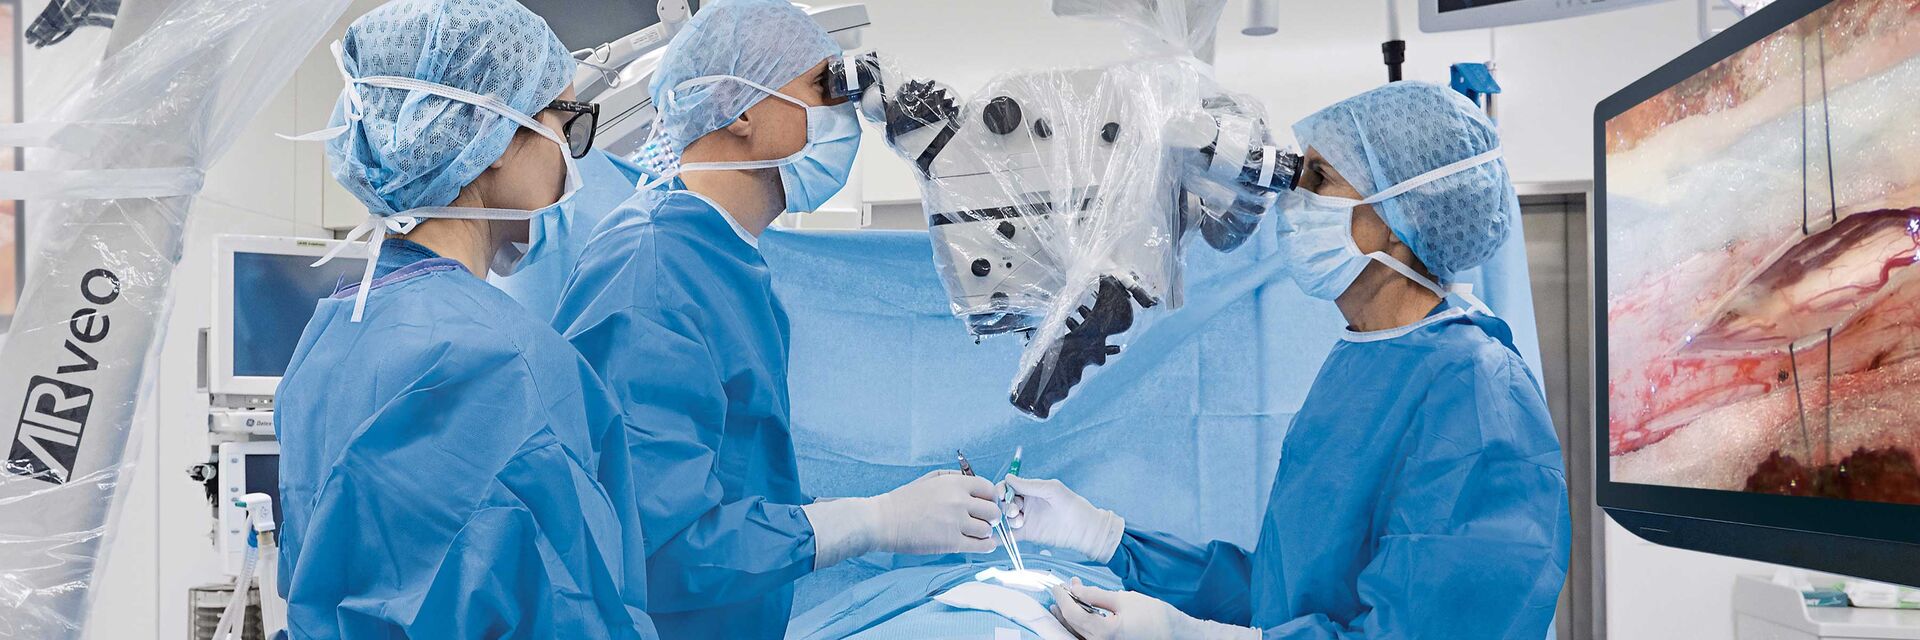 神经外科手术显微镜和脊柱外科手术显微镜